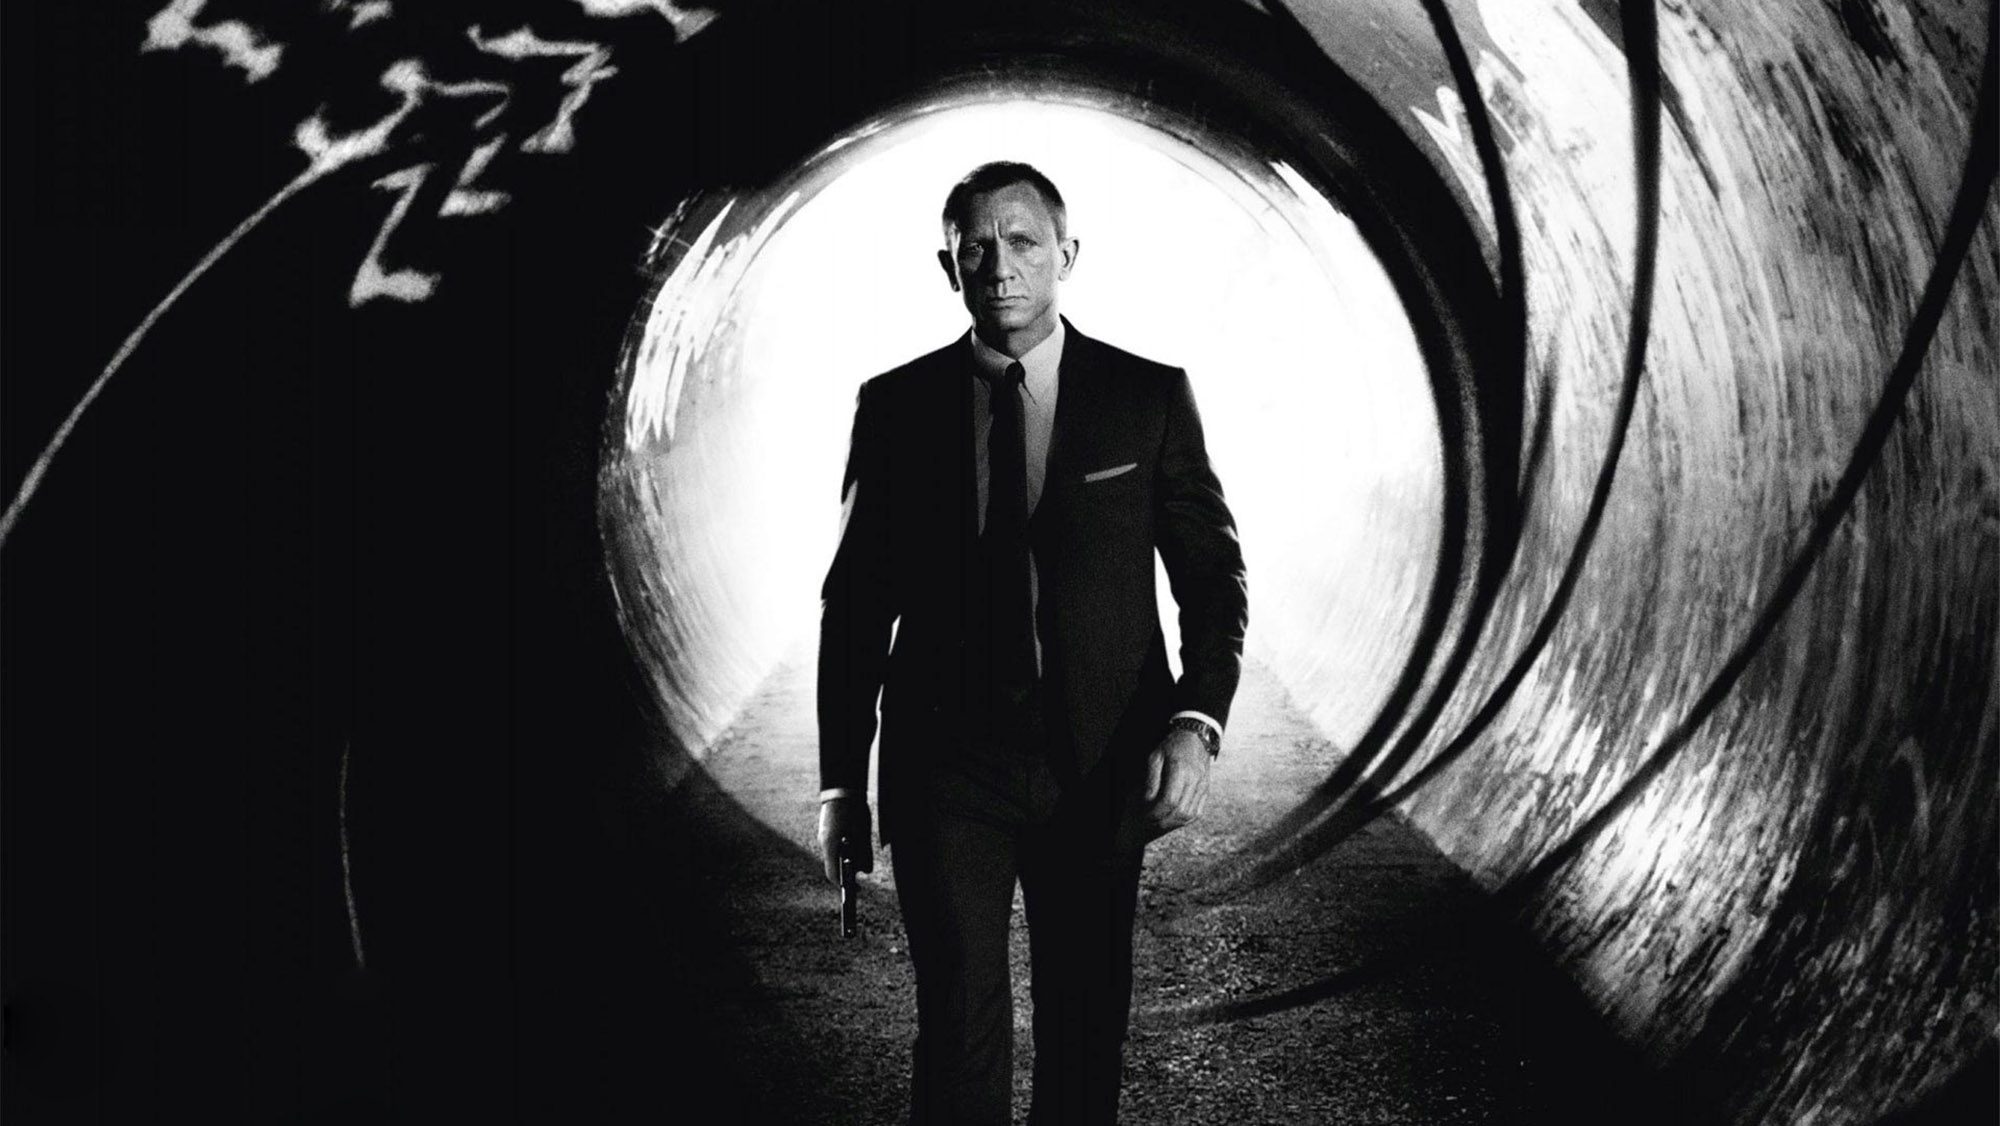 kauft James Bond Rechte: Ist ein Film- und Serienuniversum zu 007  geplant? - Serien zu Q, Blofeld und Felix Leiter? - seriesly AWESOME